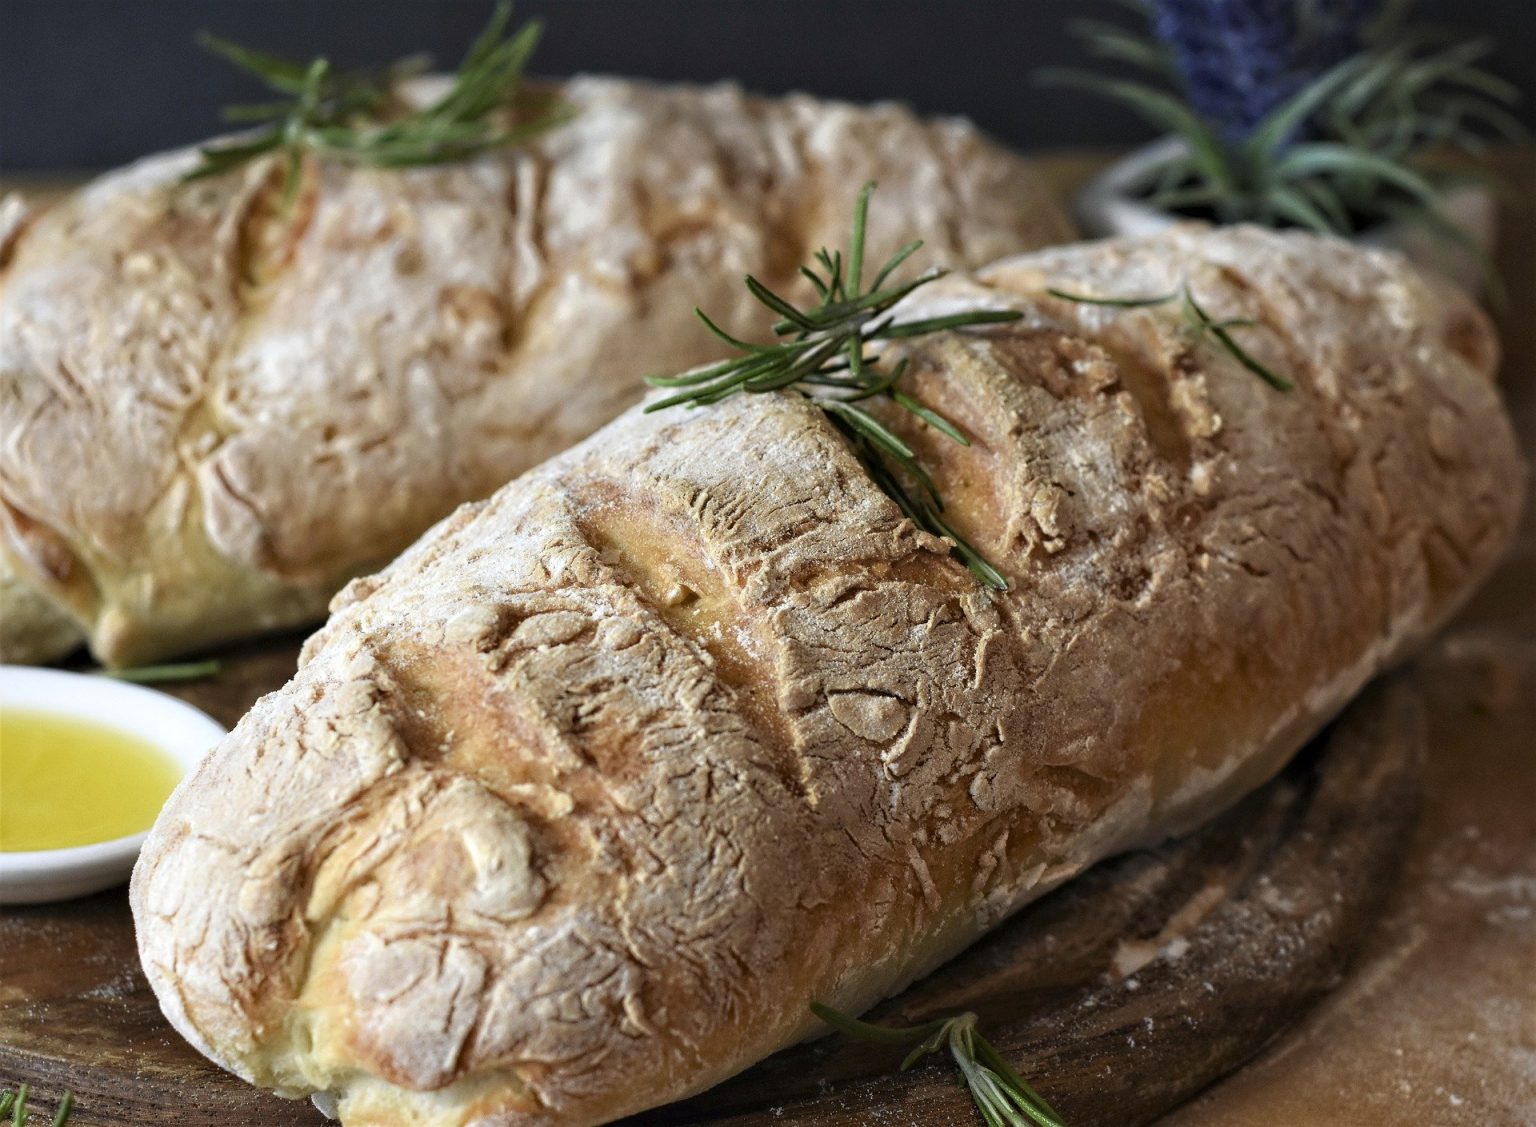 Französisches Brot im Bräter - Lecker backen